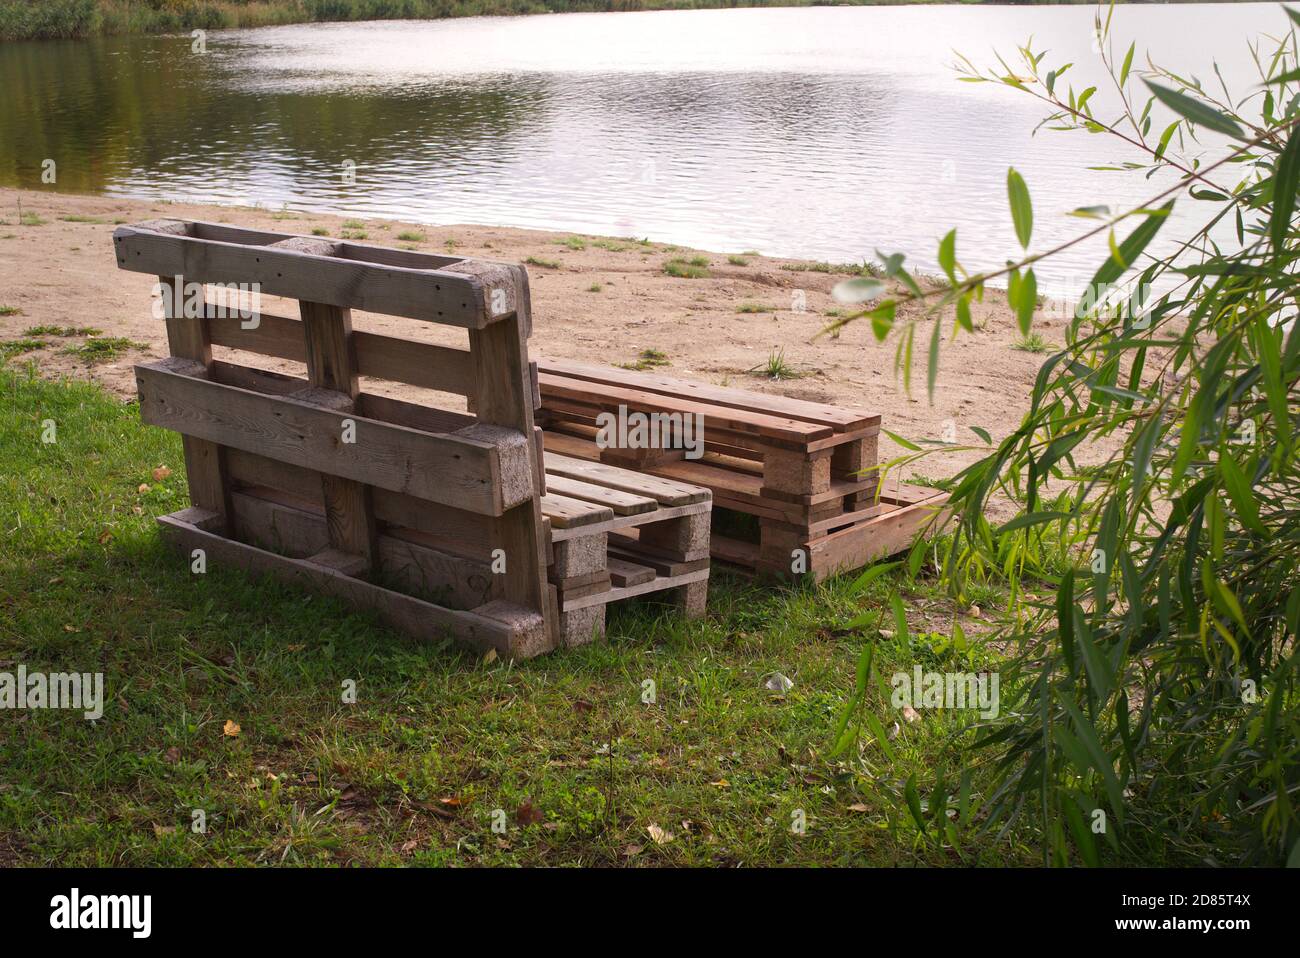 Gartenmöbel aus Holzpaletten am Ufer Ein ruhiger See, umgeben von Bäumen und viel Grün Sommersonne Stockfoto